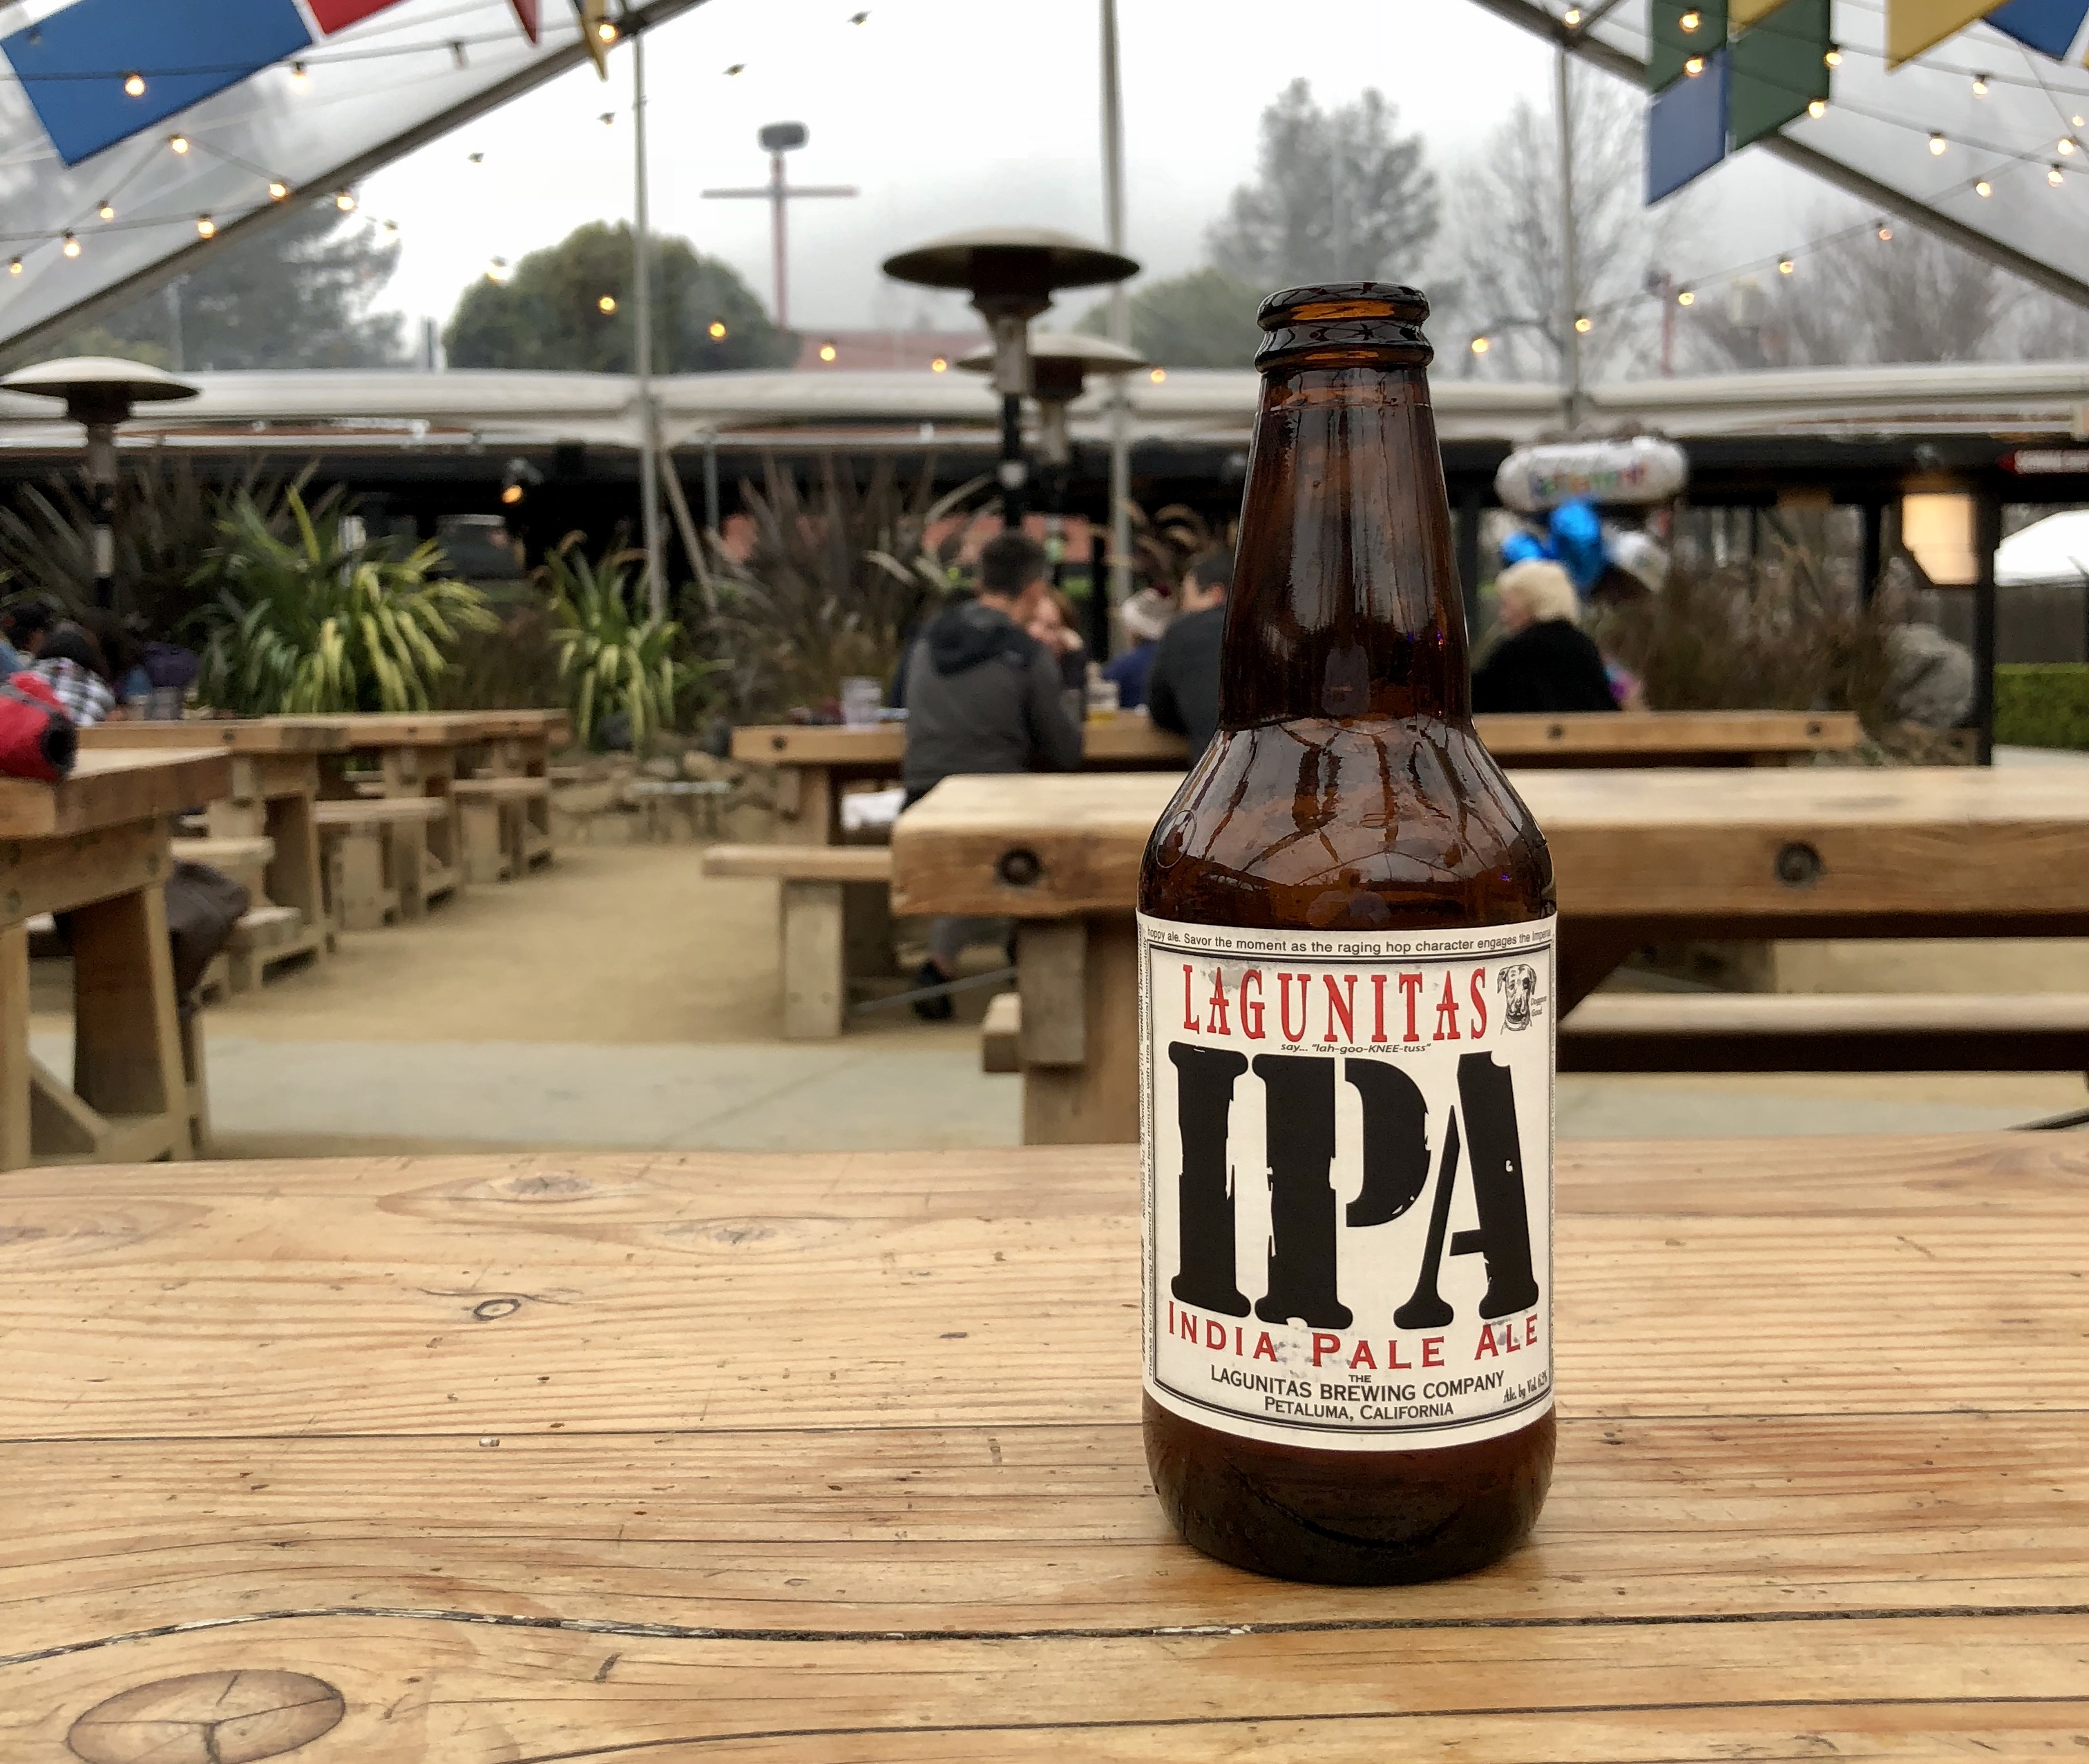 A Lagunitas IPA at the brewery in Petaluma California.